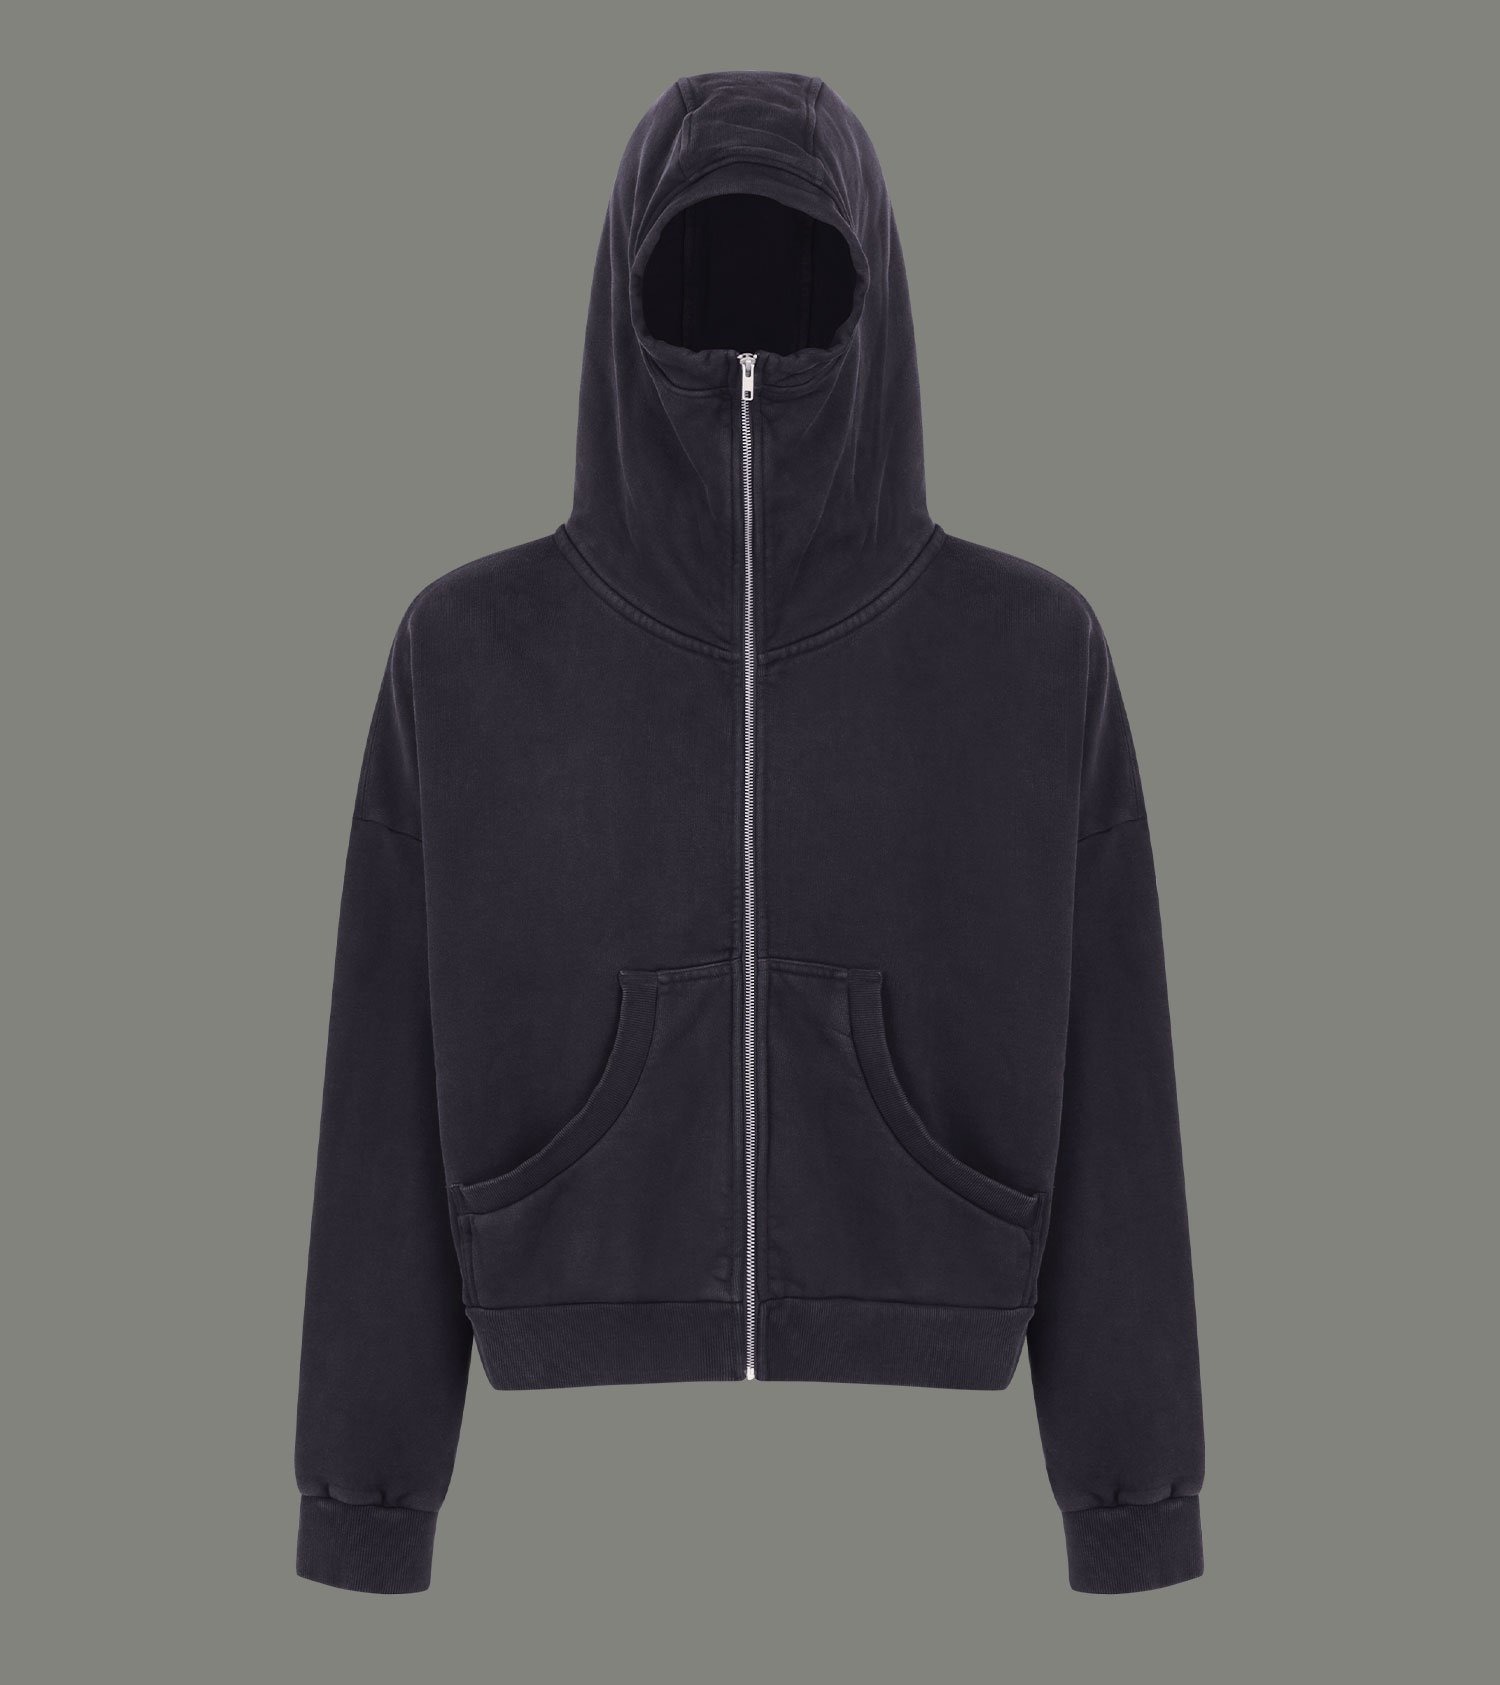 alyxentire studios zipped hoodie